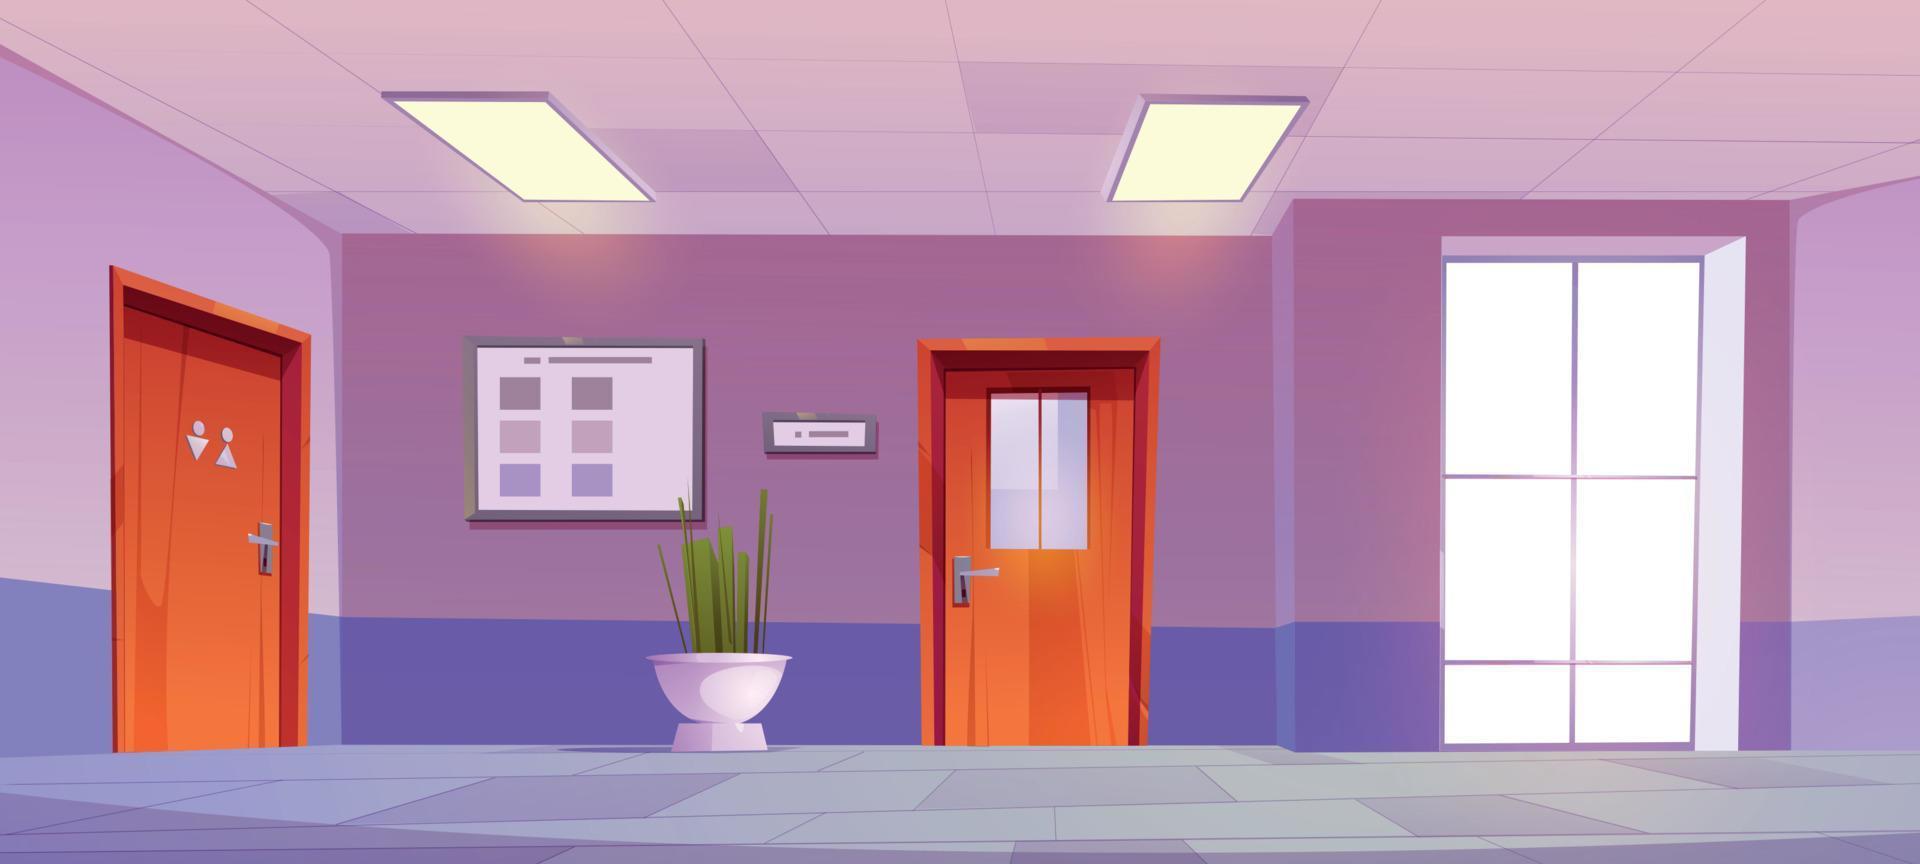 scuola corridoio interno con bagno porta. clinica sala vettore